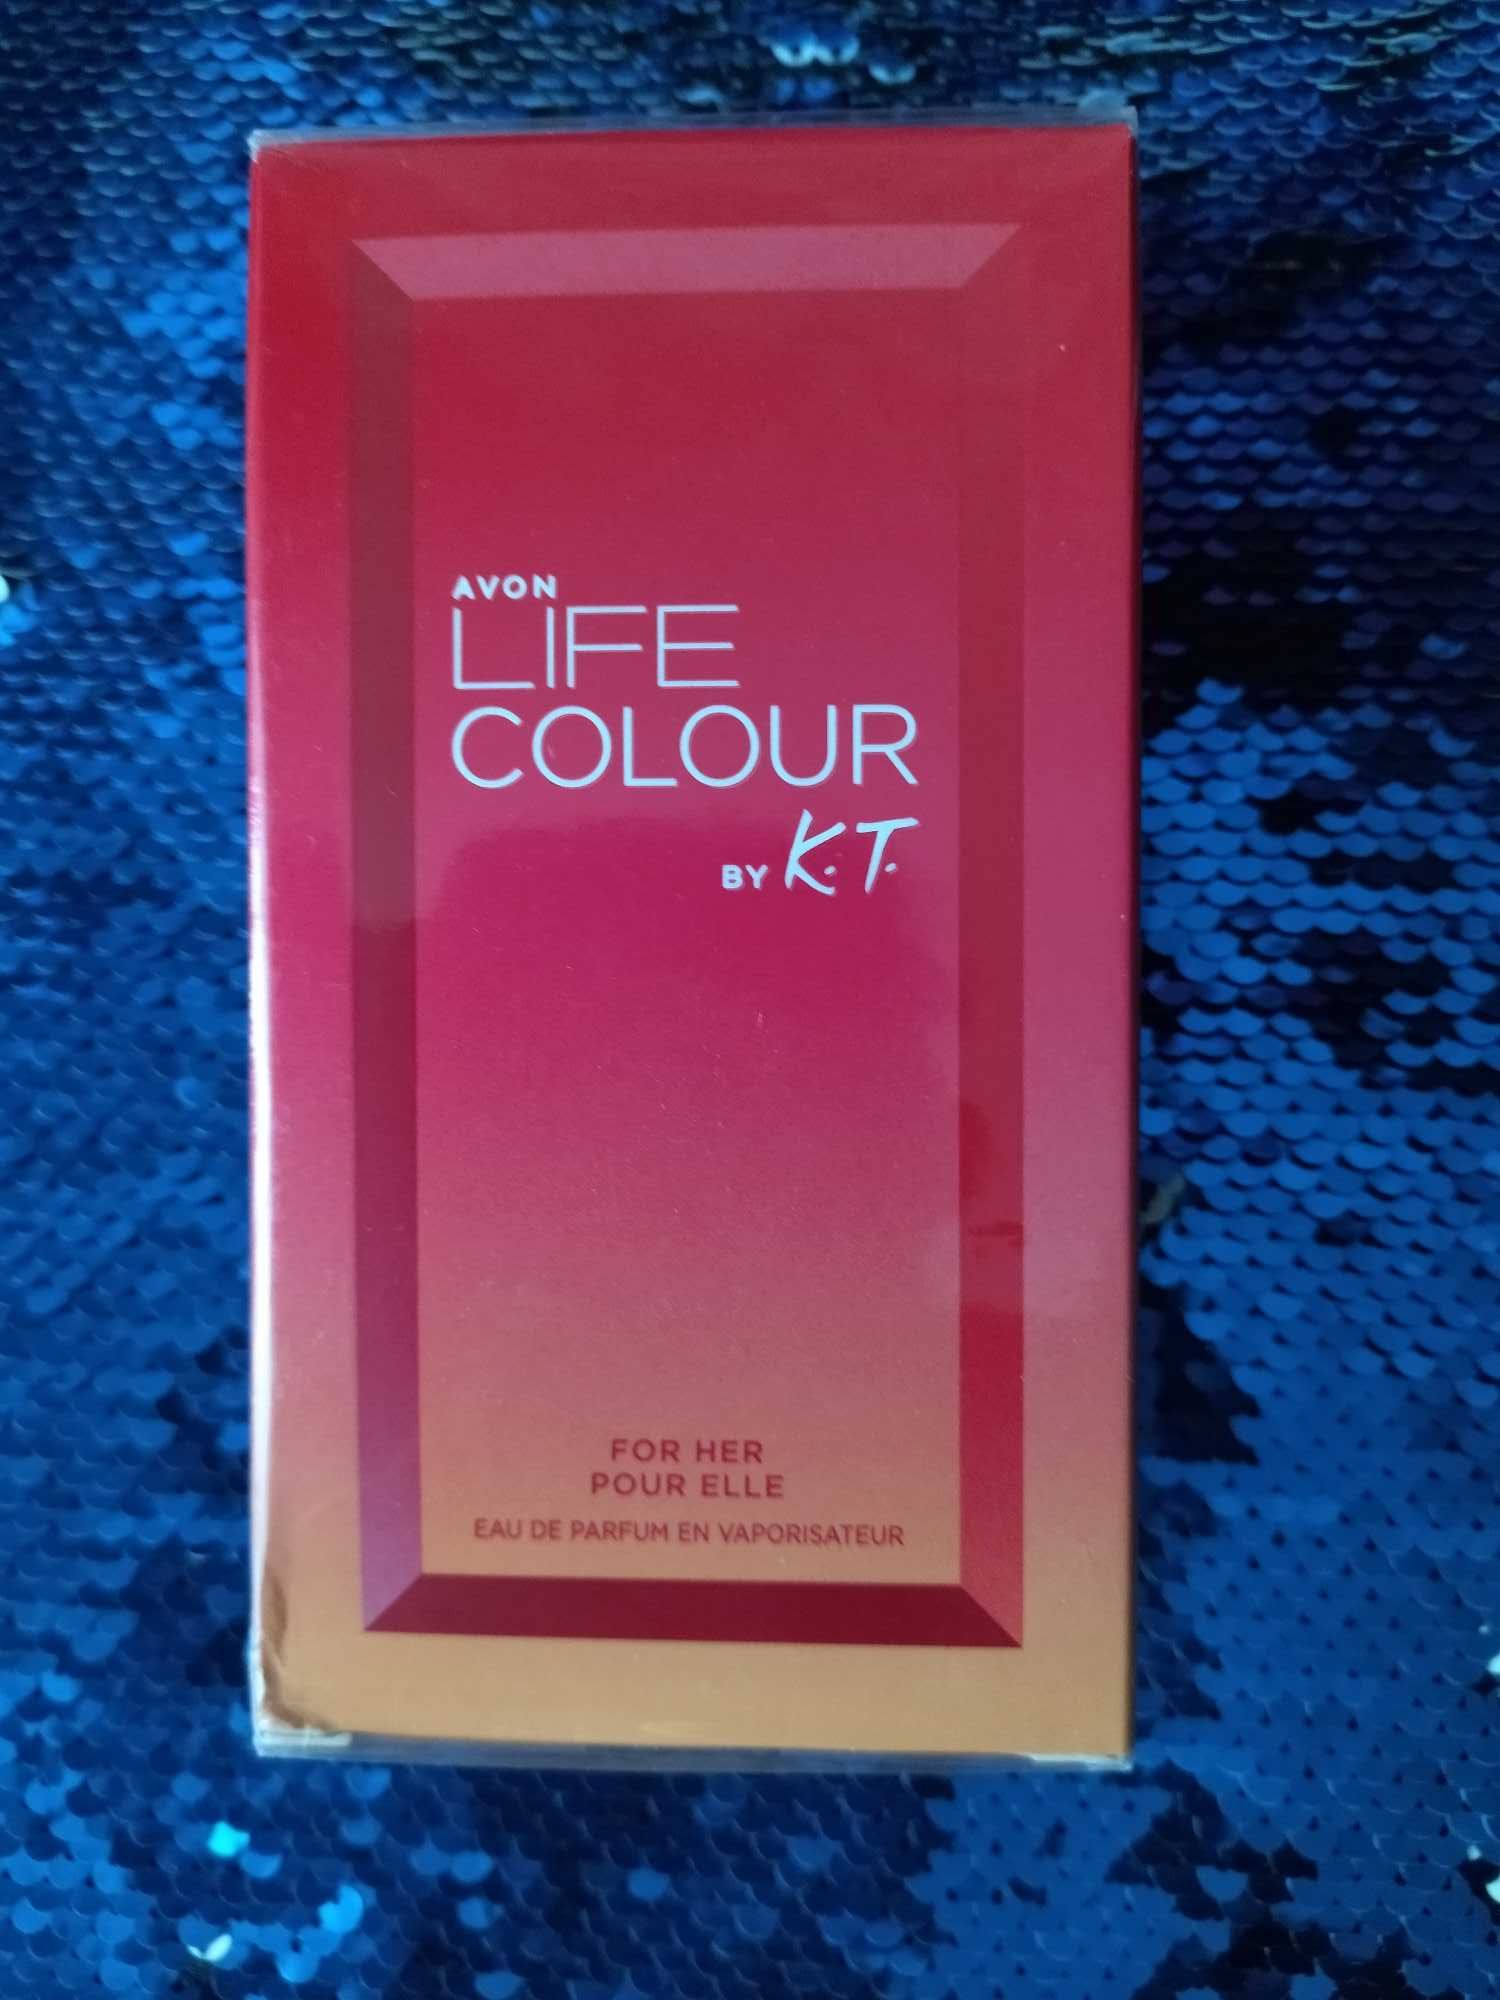 Avon Life Colour Kenzo 50ml